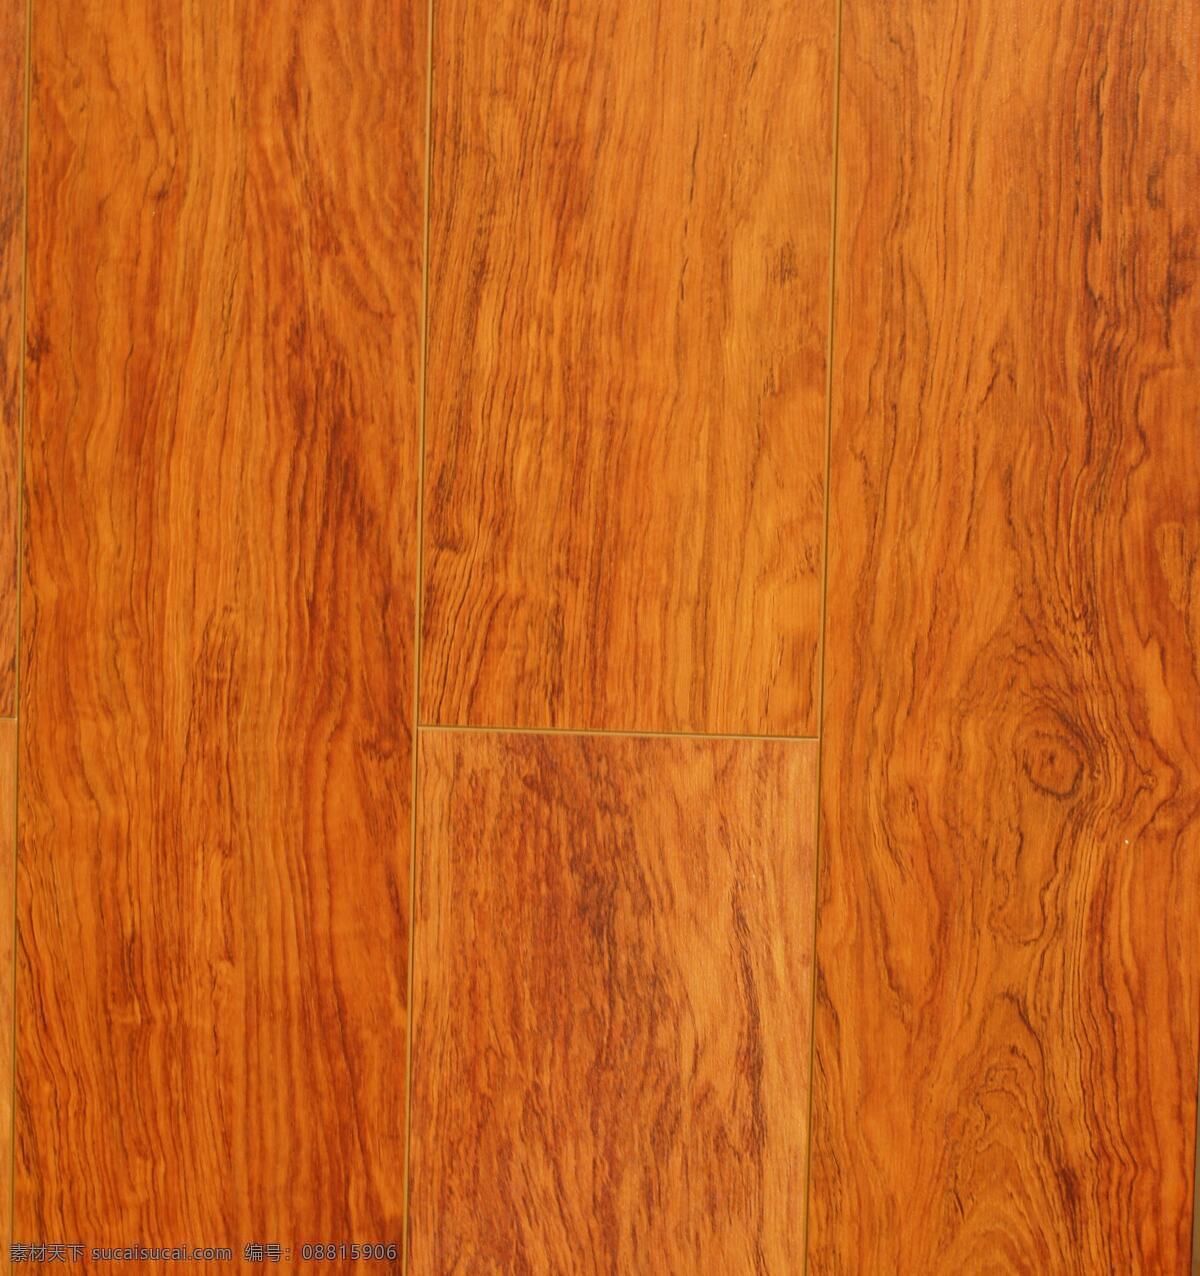 鸿运 花梨木 地板 实木地板 地板贴图 地板材质 家装素材 装修素材 装修装饰 木纹贴图 木纹装饰 木纹图案 生活百科 生活素材